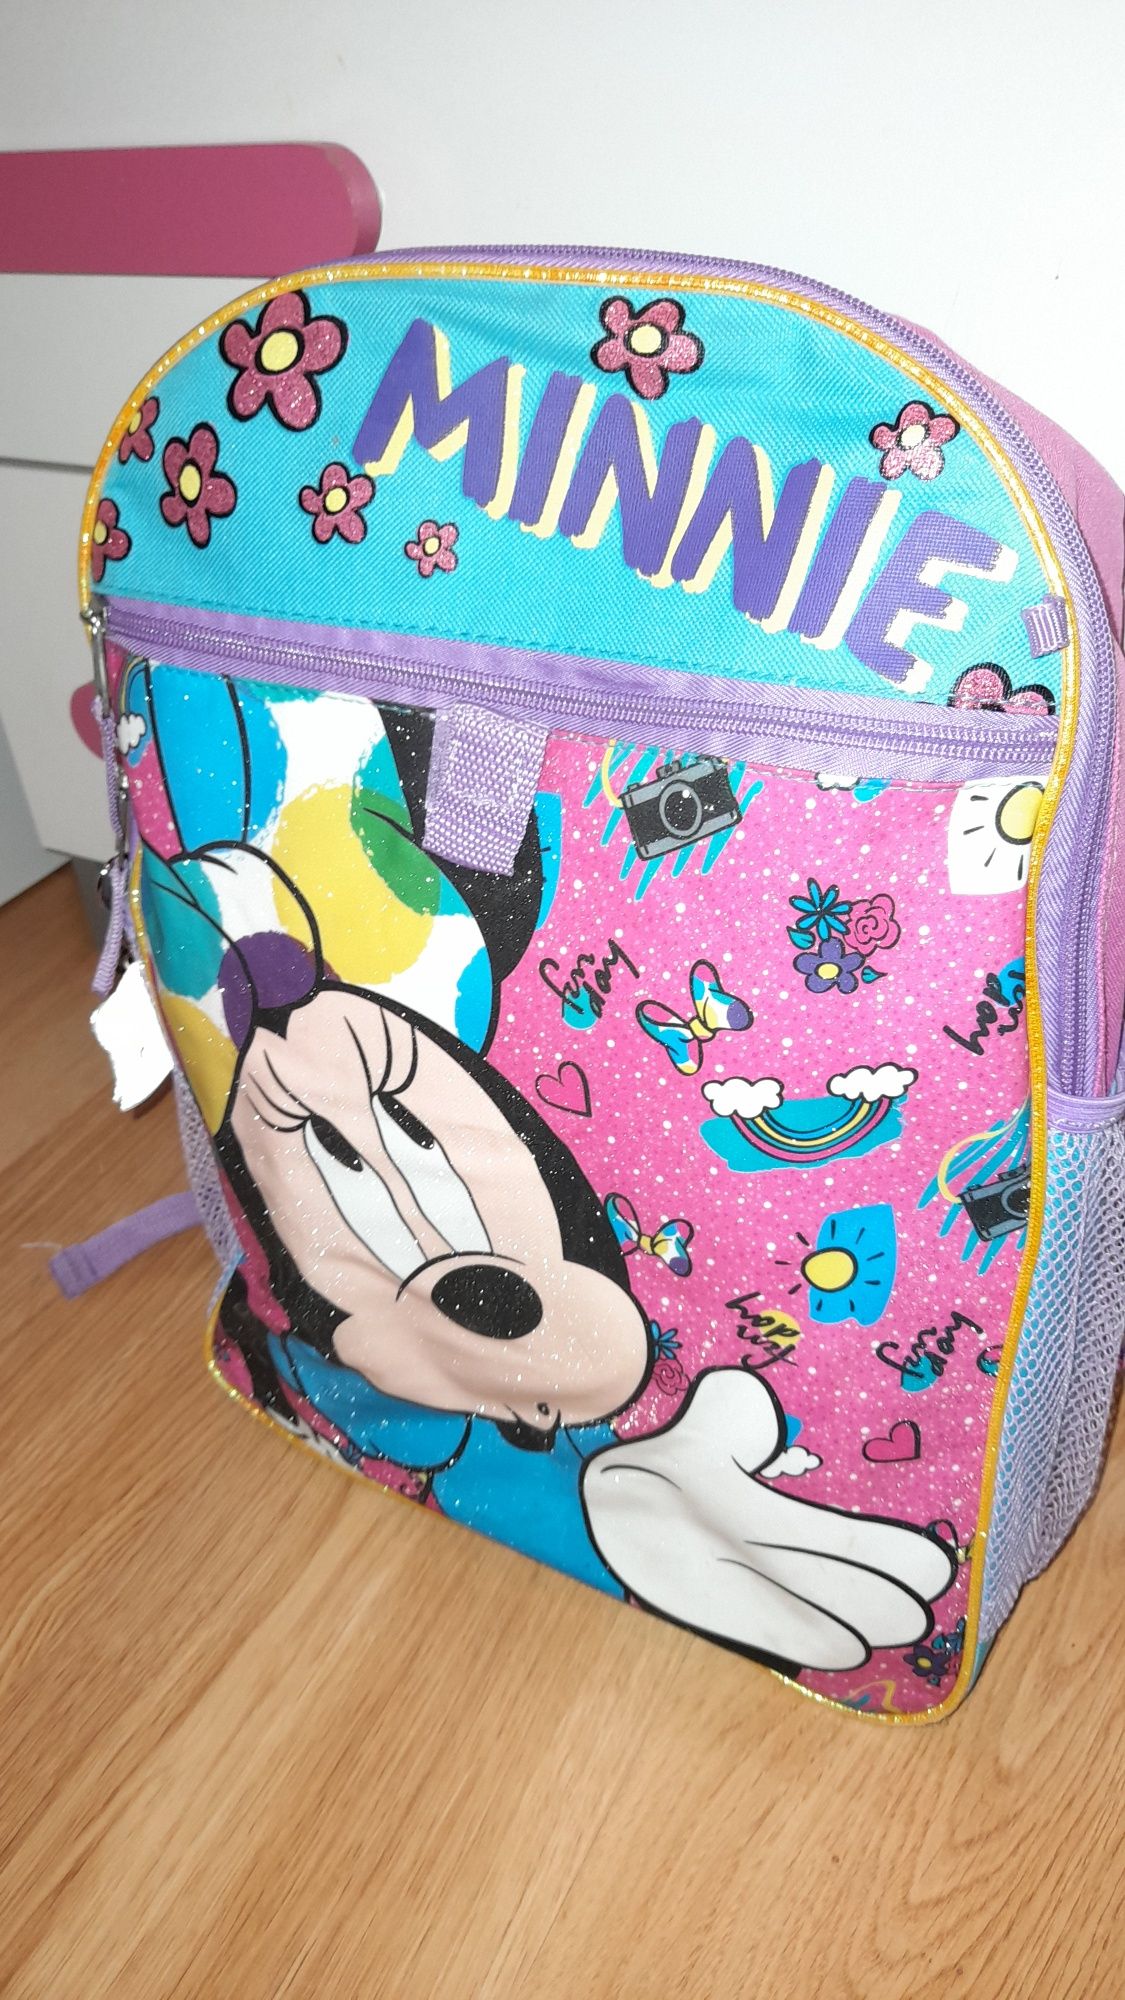 Plecak z Minnie śliczny.